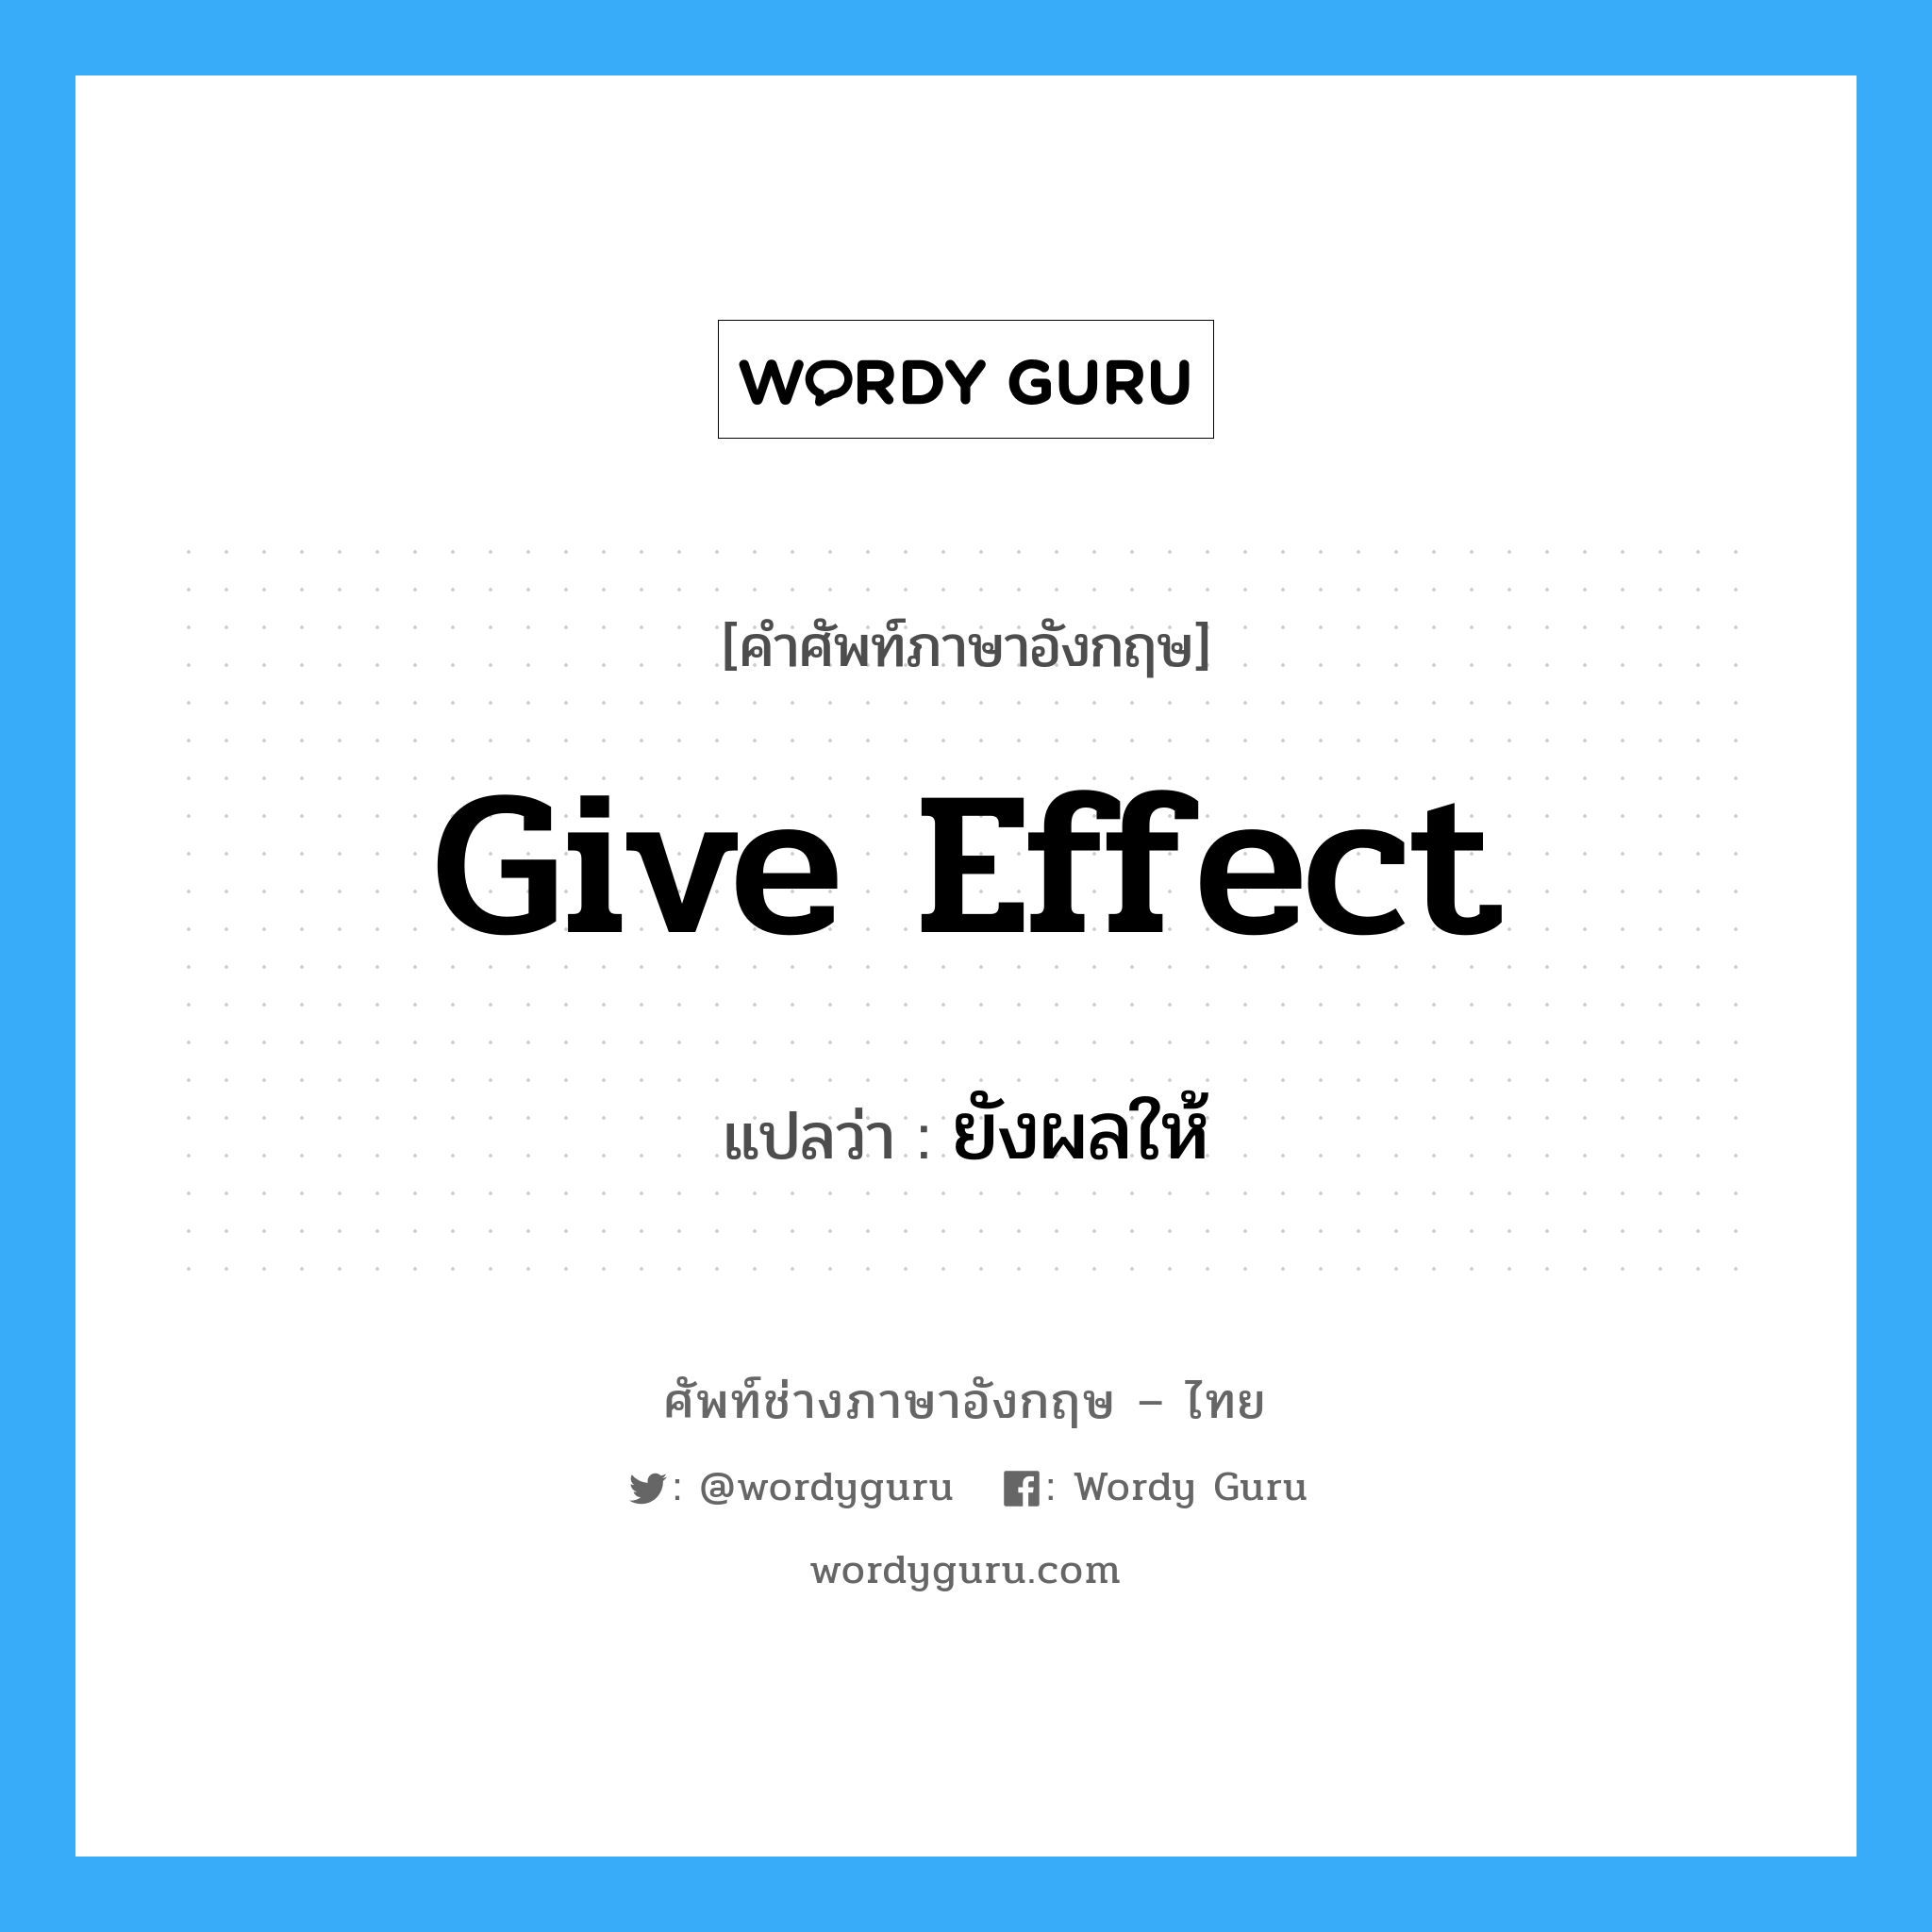 ยังผลให้ ภาษาอังกฤษ?, คำศัพท์ช่างภาษาอังกฤษ - ไทย ยังผลให้ คำศัพท์ภาษาอังกฤษ ยังผลให้ แปลว่า Give effect